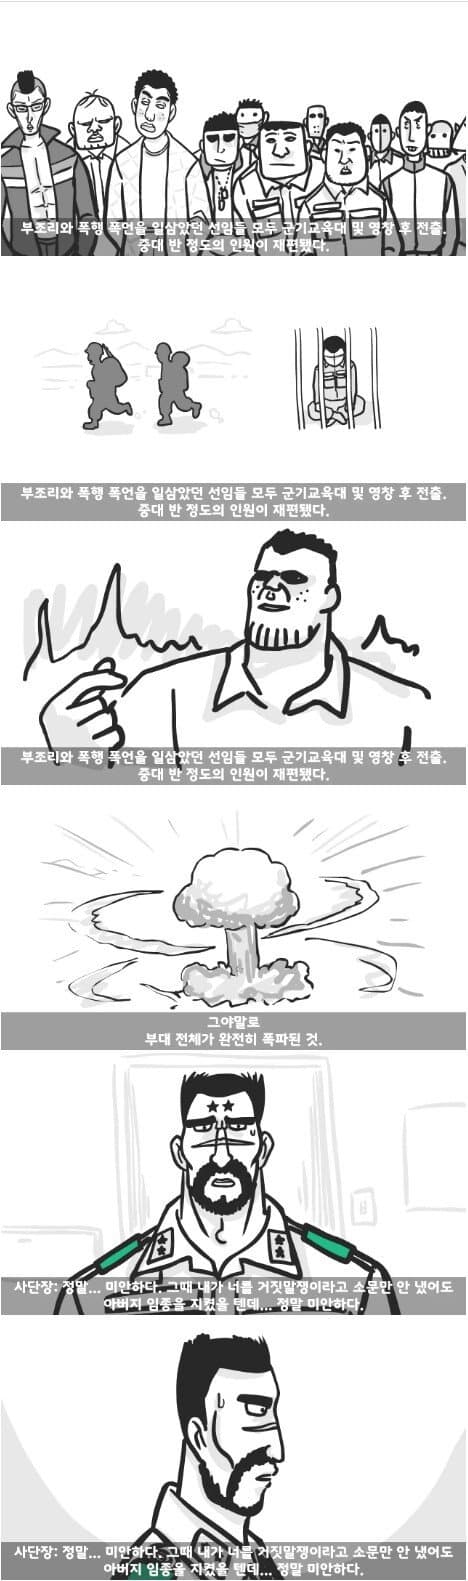 군대 4스타인 만화 19.jpg